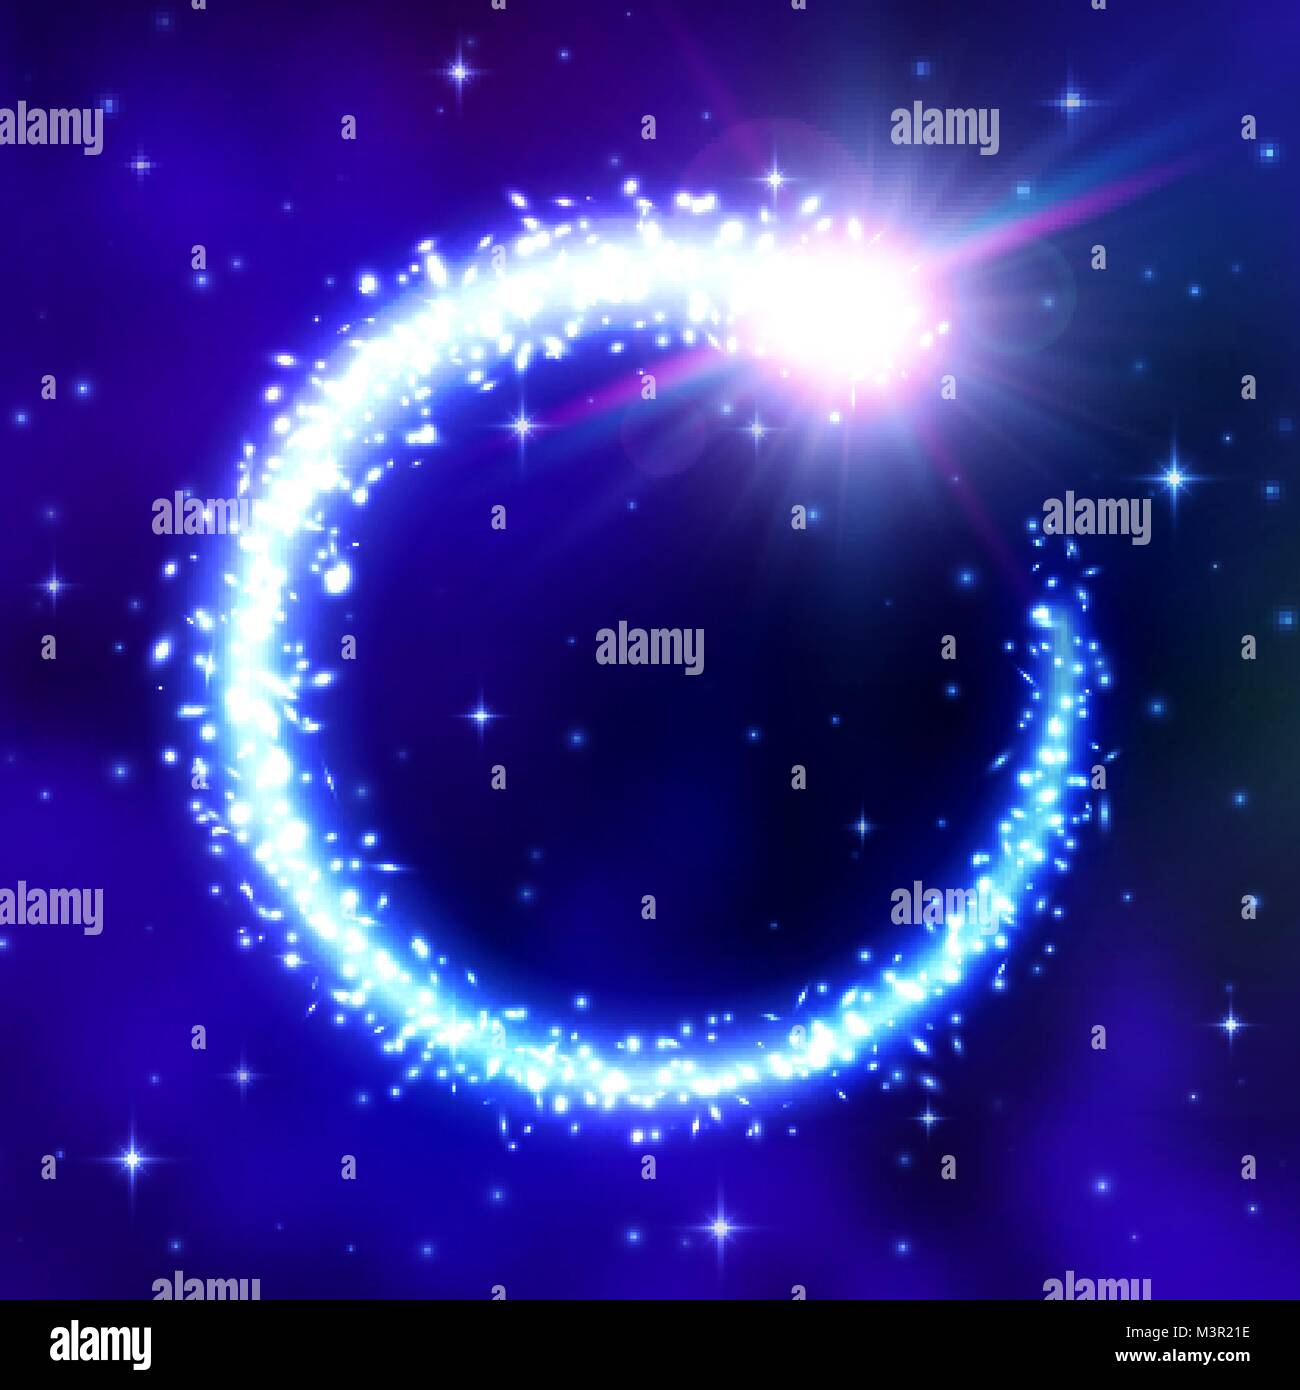 Cometa incandescente telaio blu su sfondo spazio notte con cielo nuvoloso. Flash di luce nebulosa galattica, sfarfallio stelle particelle. Coda di cometa glitter con stelle brillano di svasatura. Cosmic illustrazione vettoriale. Illustrazione Vettoriale